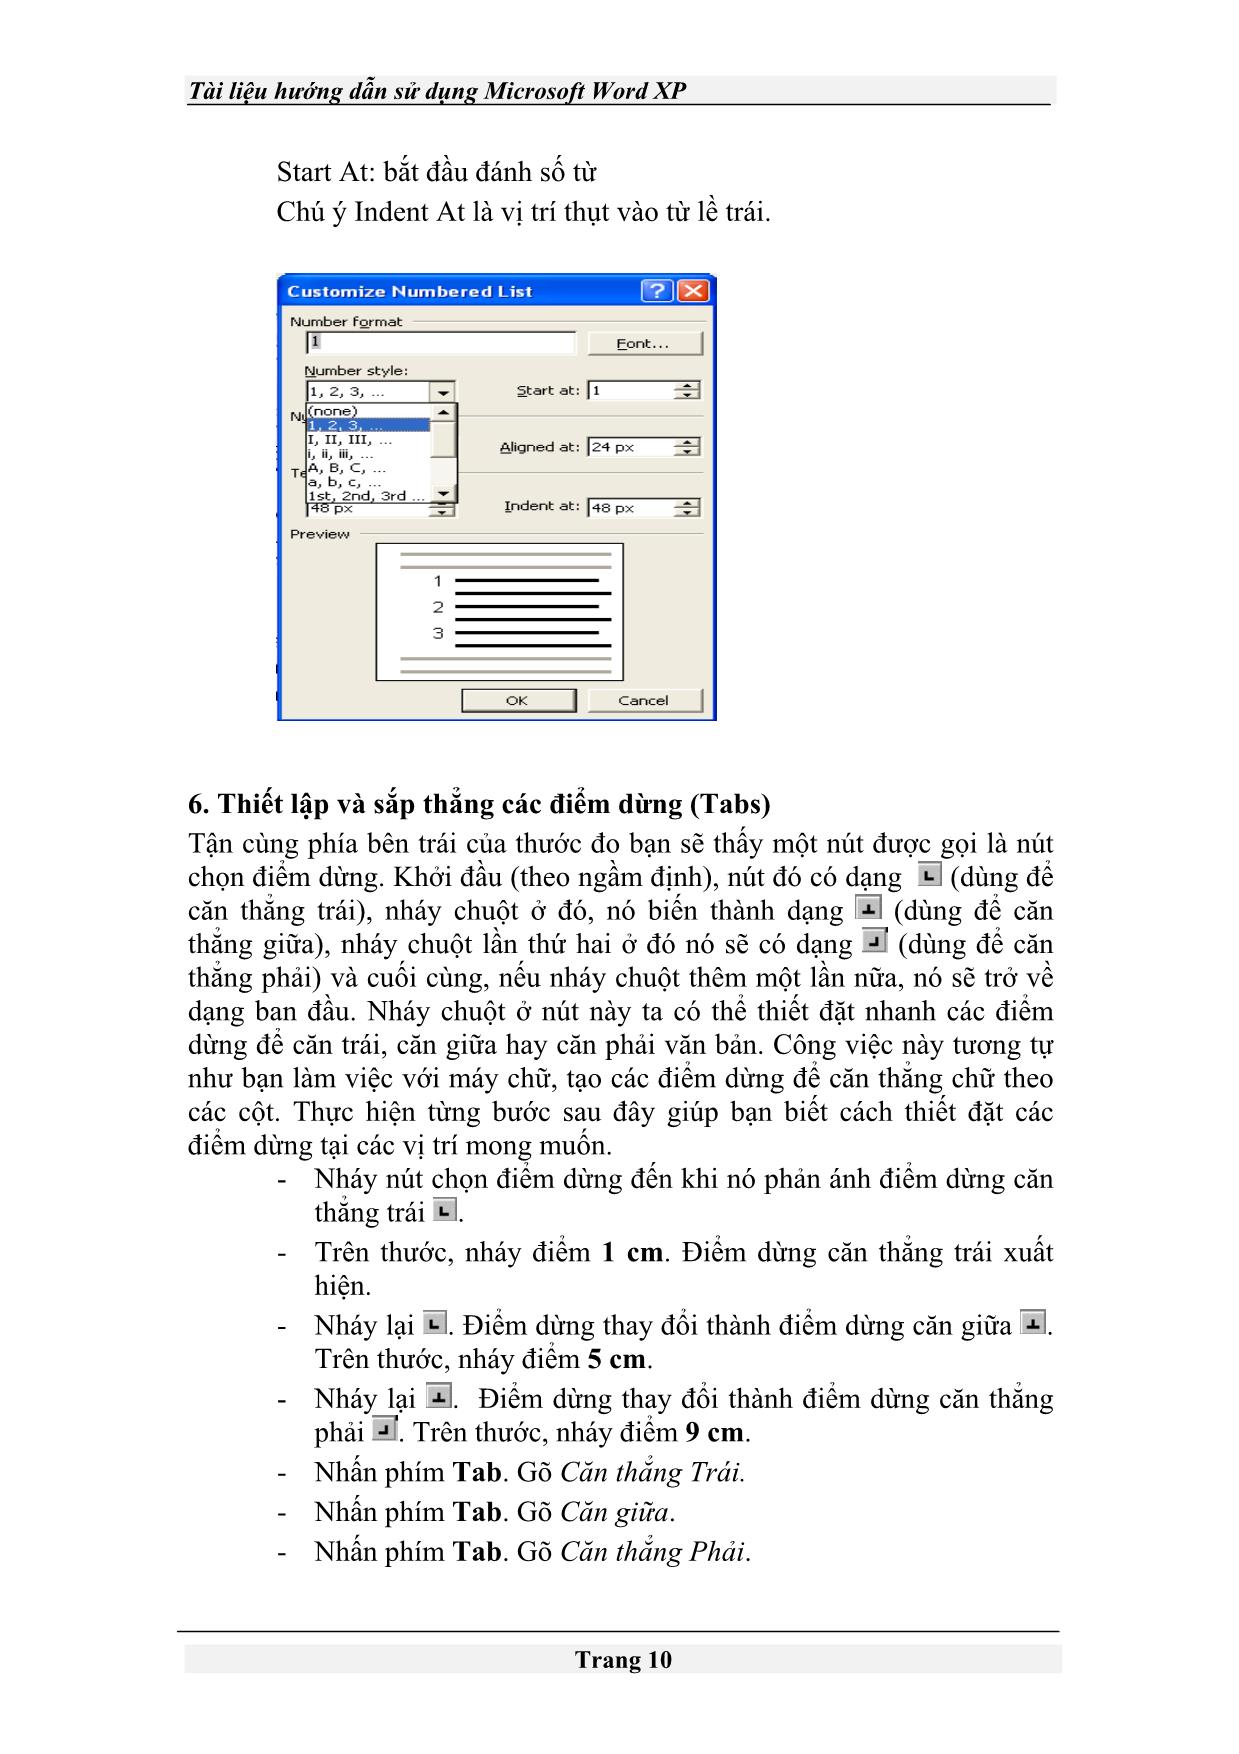 Tài liệu Hướng dẫn sử dụng Microsoft Word XP trang 10